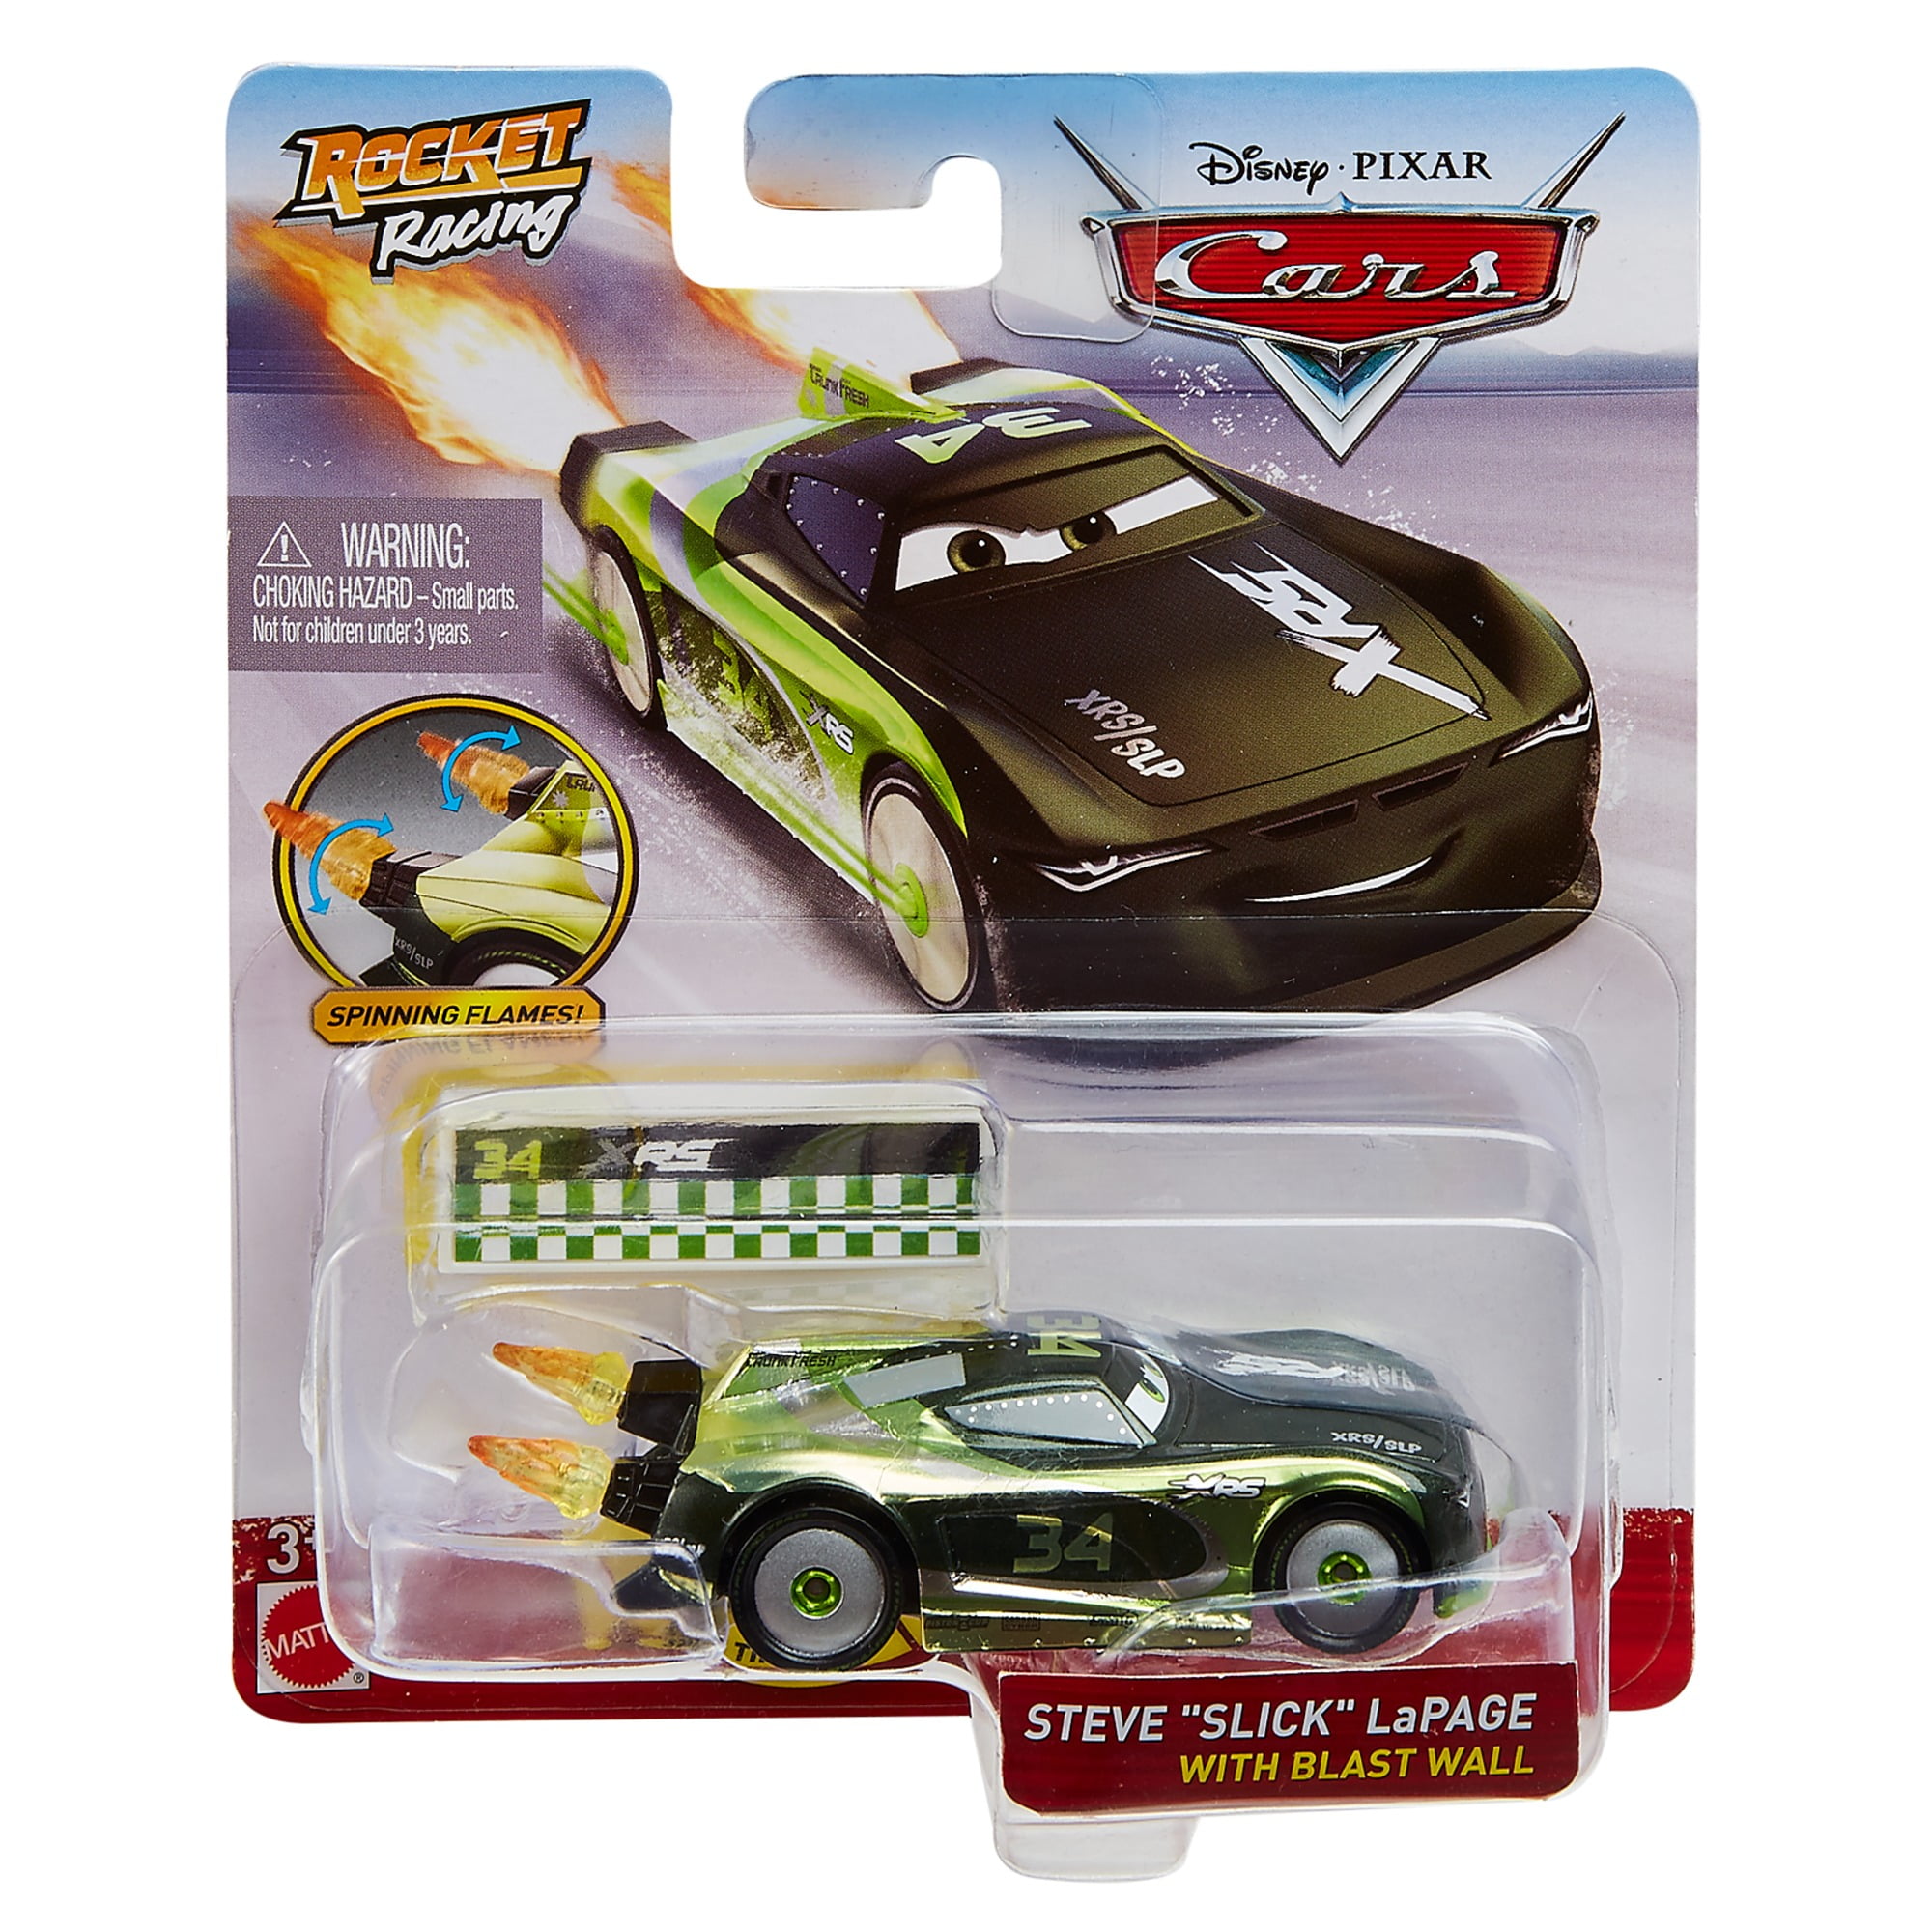 XRS Rocket Racing 1:55 Scale Die-Cast Vehicle Disney Pixar Cars Choose from 7 